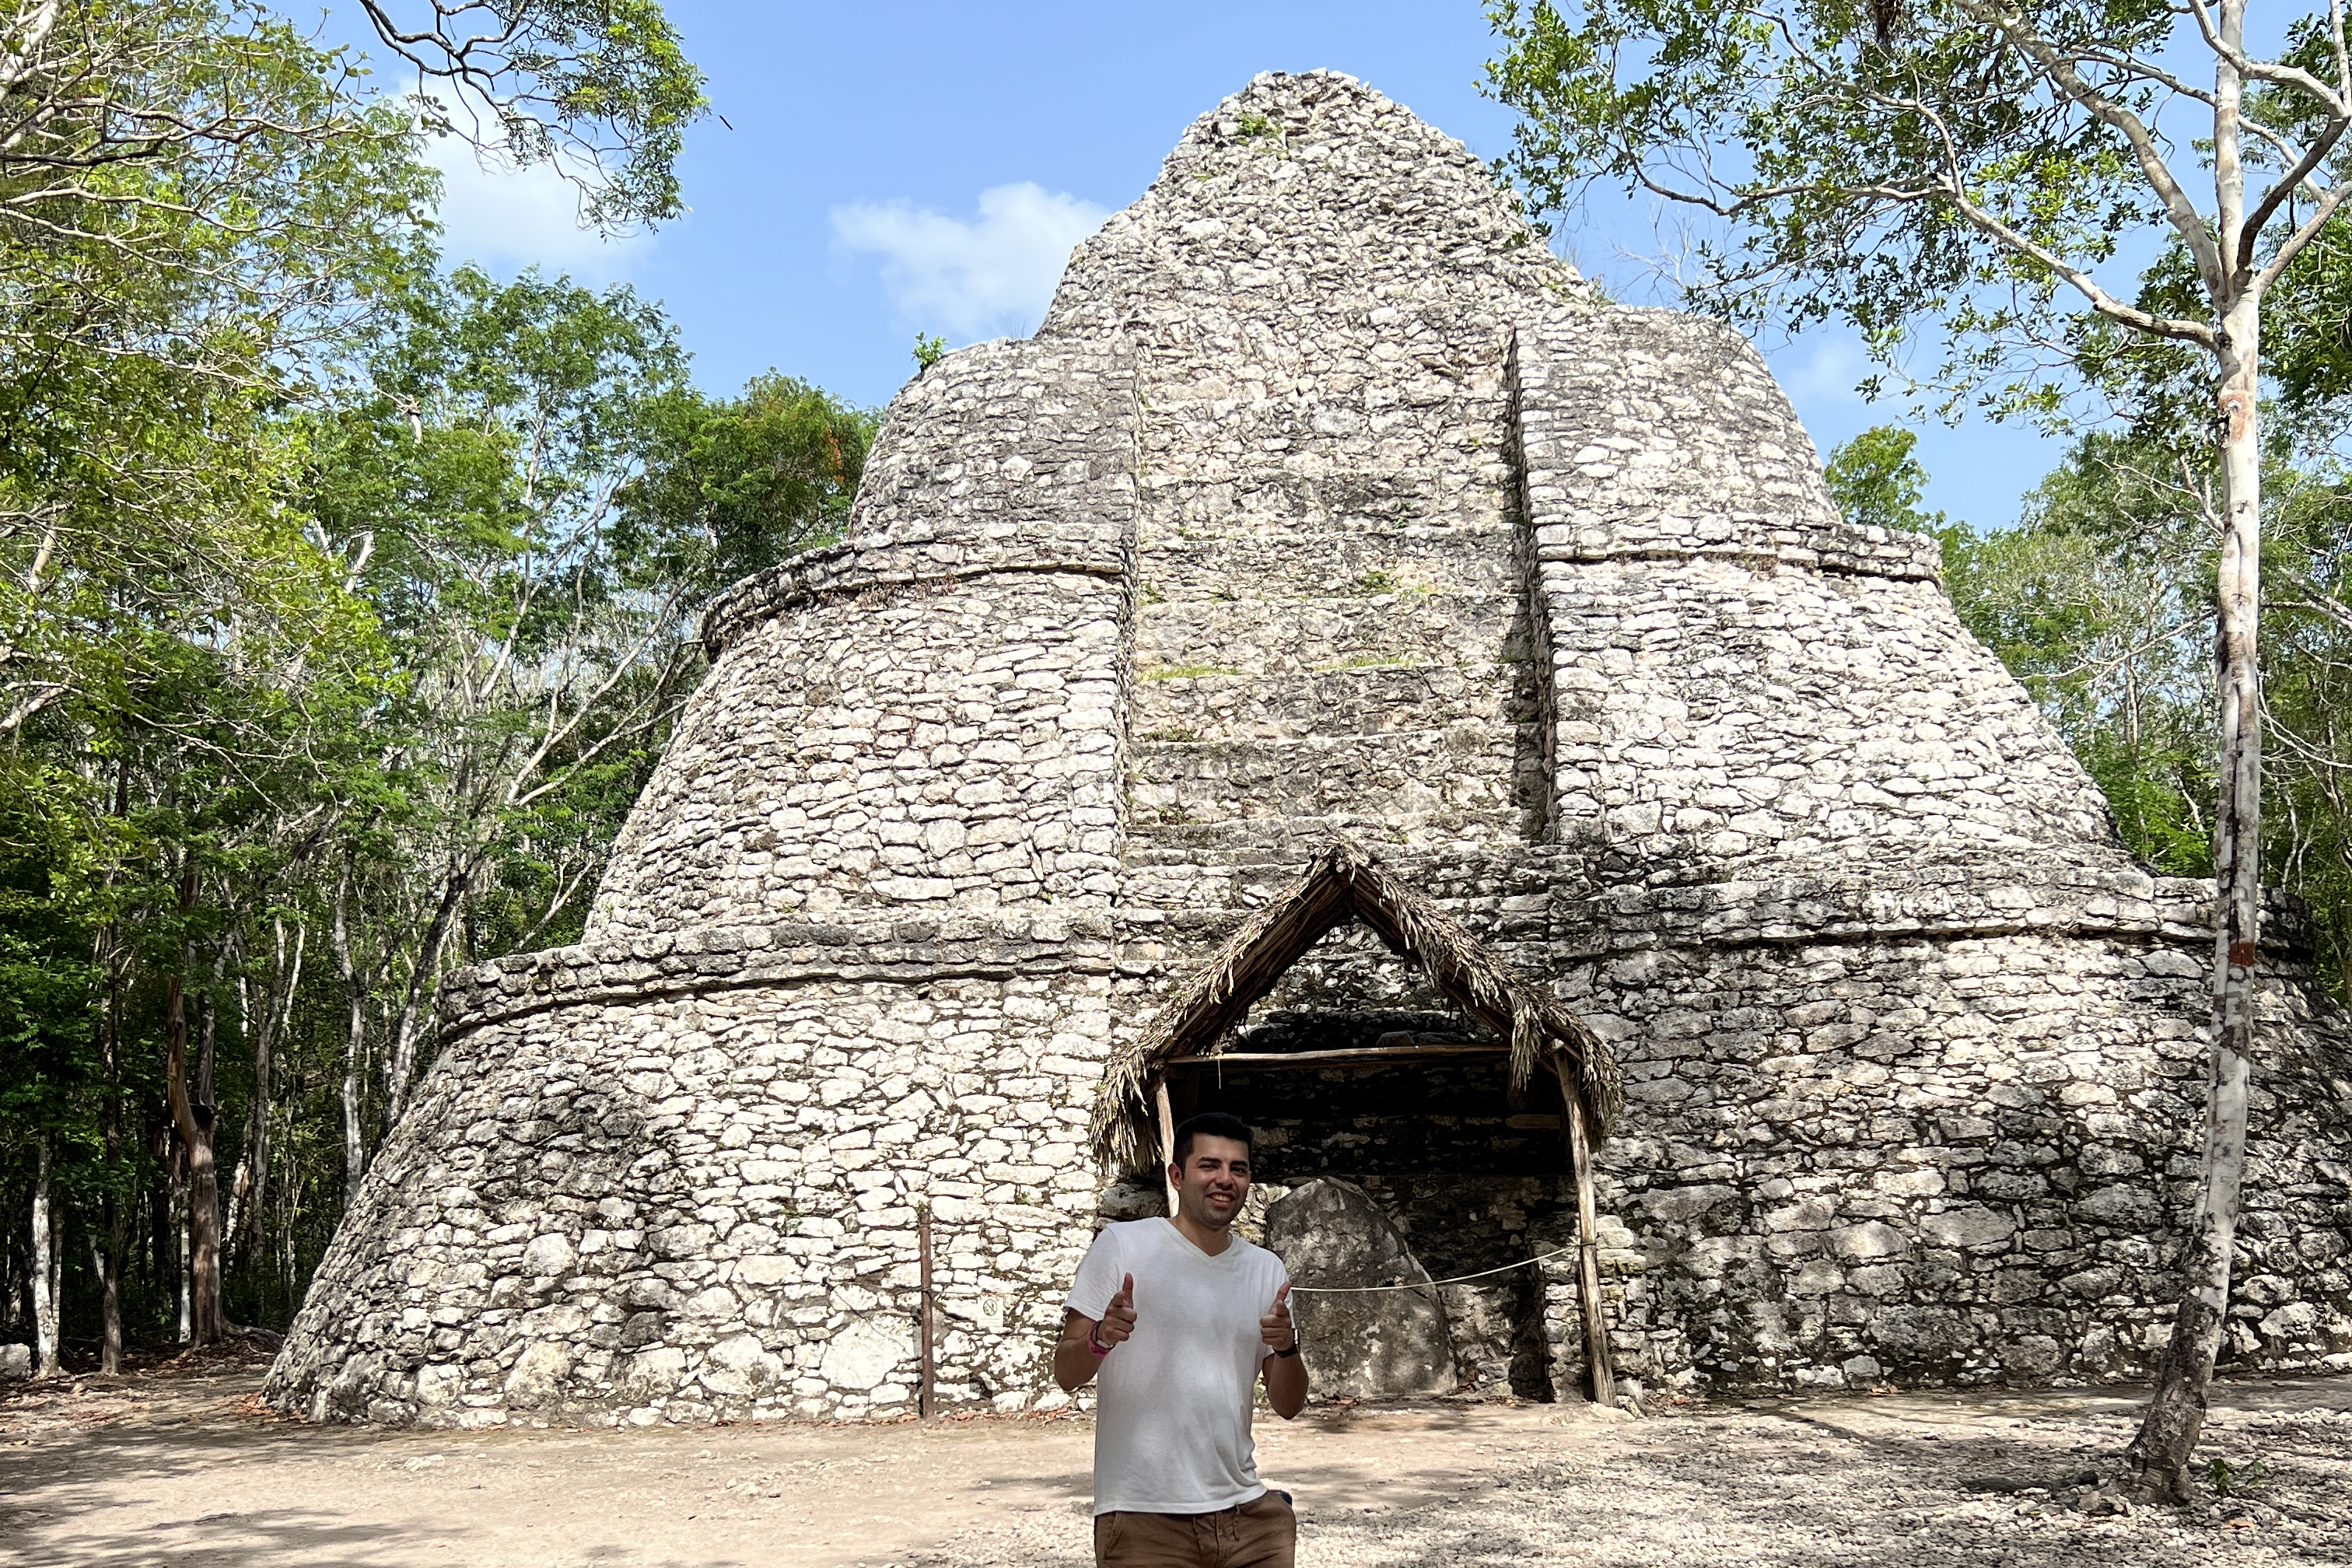 Christian Haro in front of Mayan Pyramid at Coba,Mexico